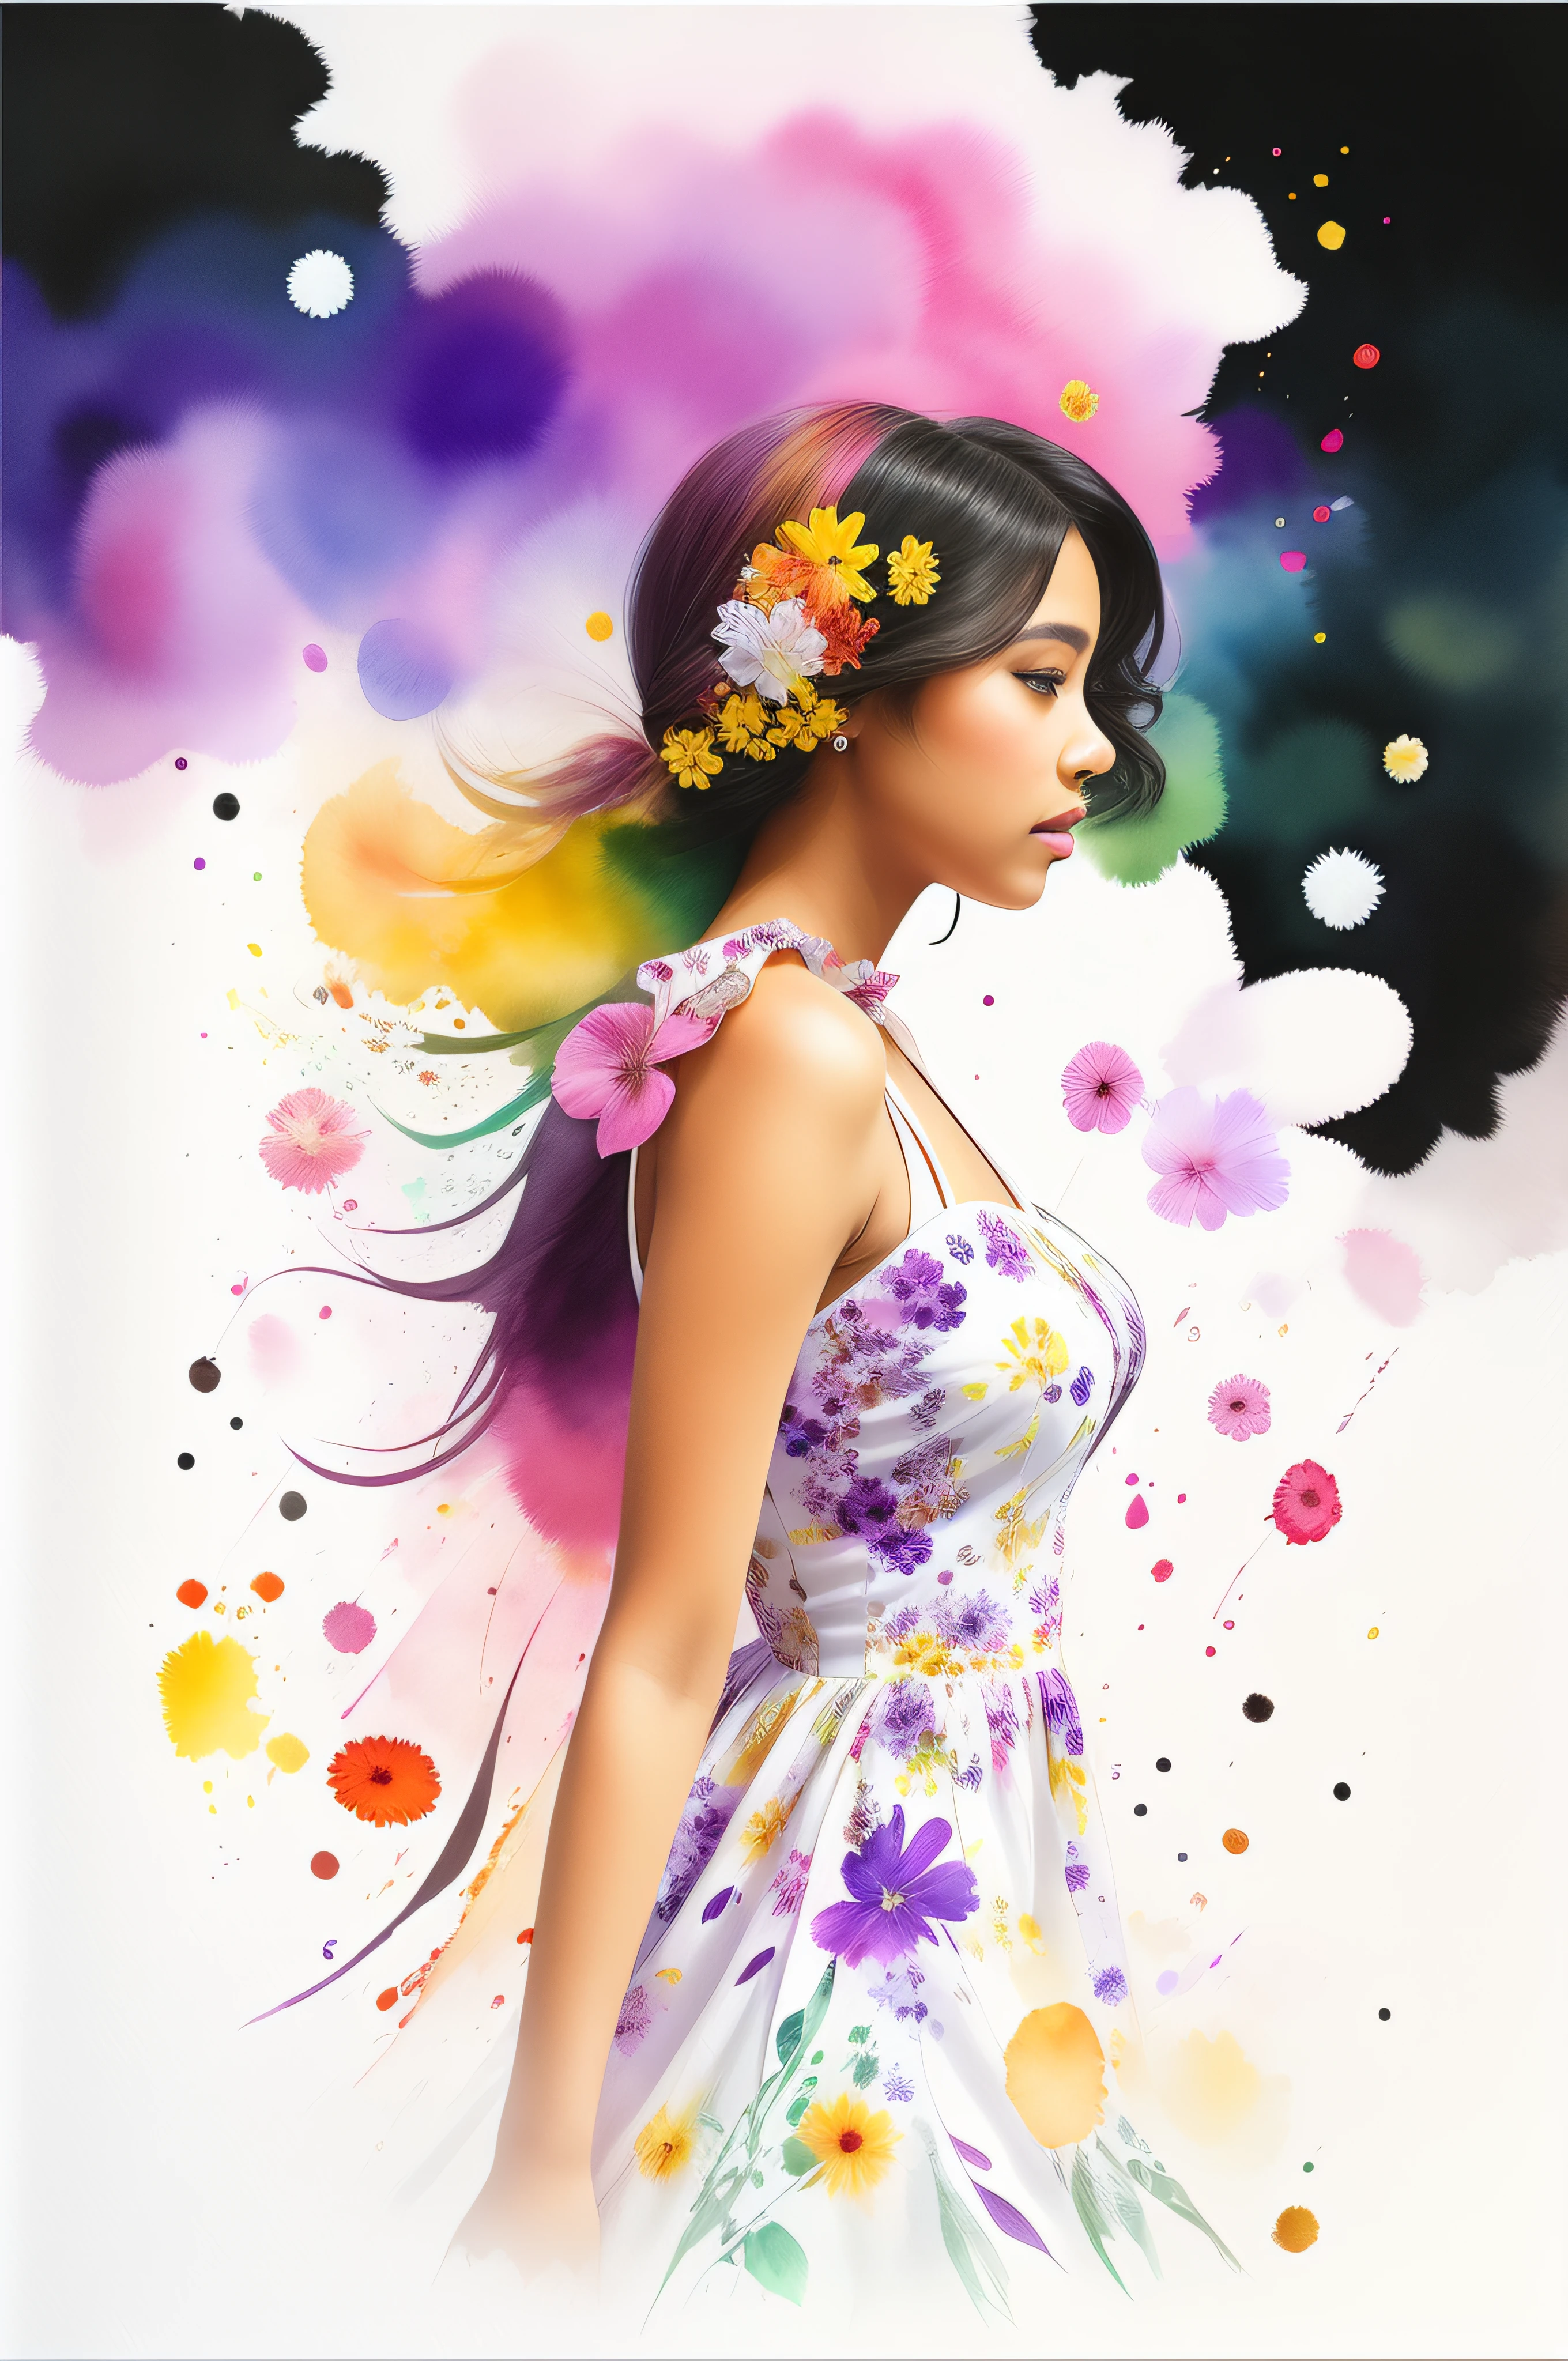 Belle femme ébène portant une robe blanche à fleurs, floral volant autour, reflets violets arc-en-ciel, fond de fleurs assorties, splashes of aquarelle, vue de côté, texturé, photo réaliste, Qualité 12k, aquarelle